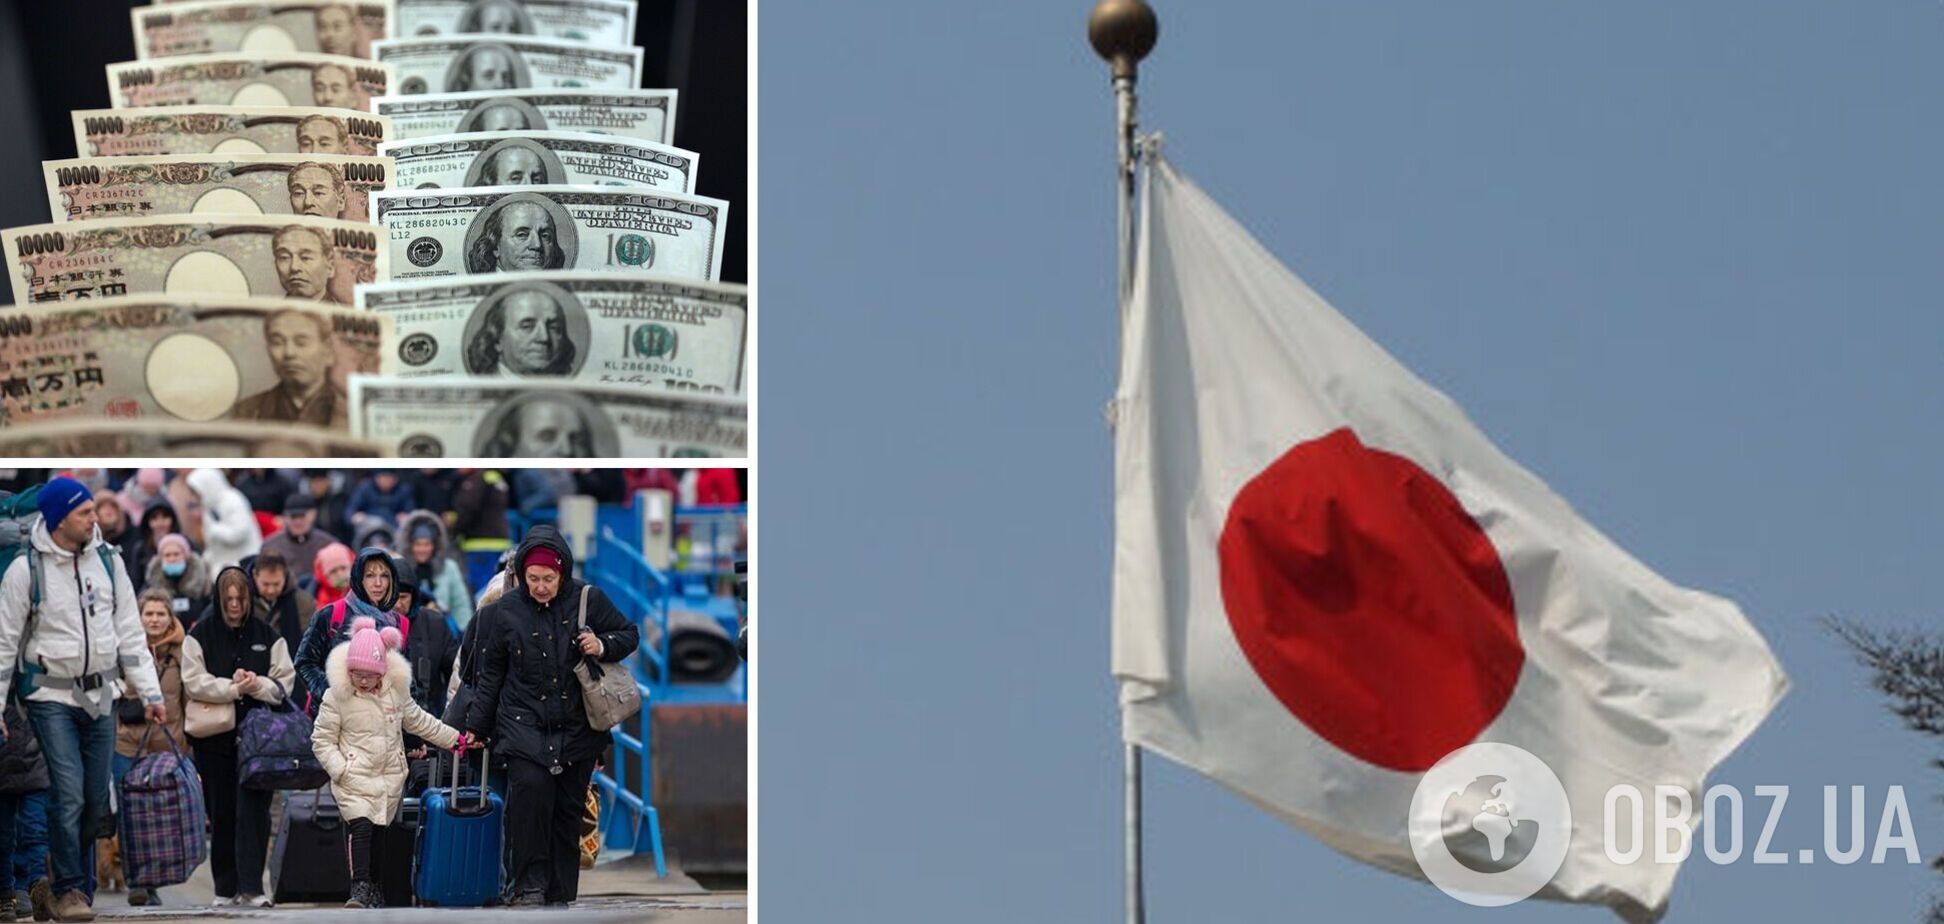 Япония предоставит гранты для компаний, который возьмут на работу украинцев 